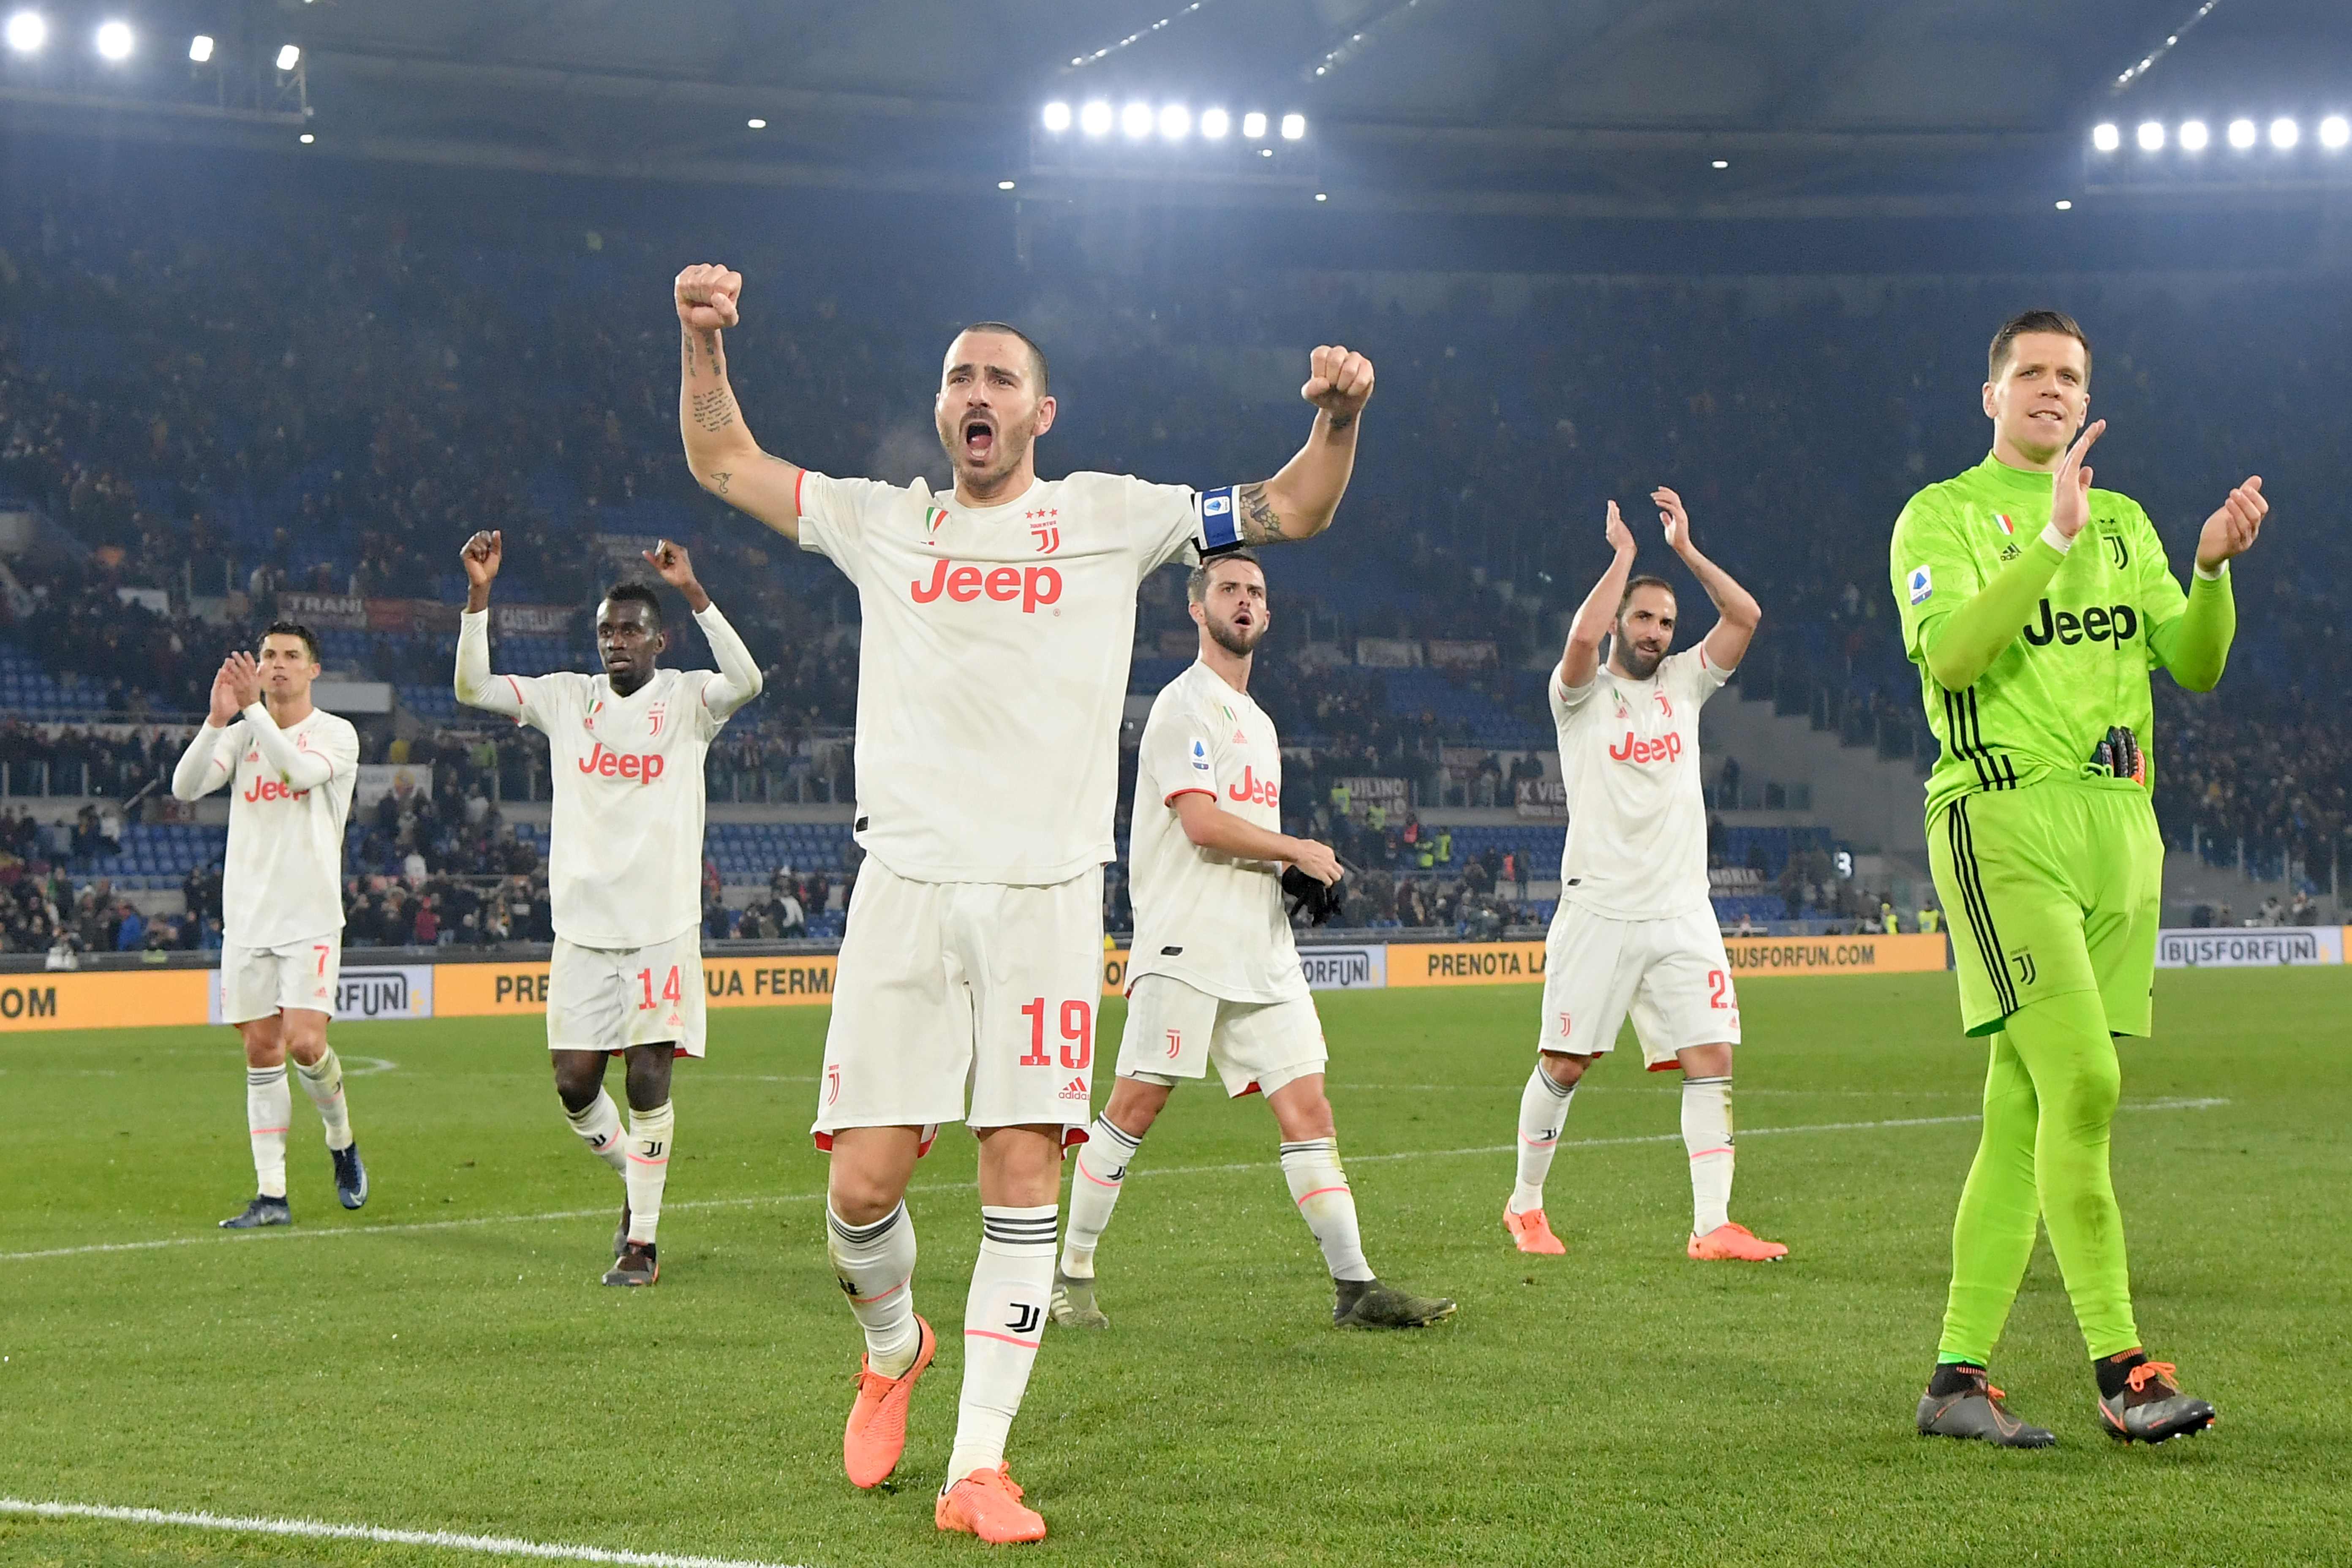 Los jugadores de la Juventus celebraron al finalizar el partido. (Foto Prensa Libre: AFP)